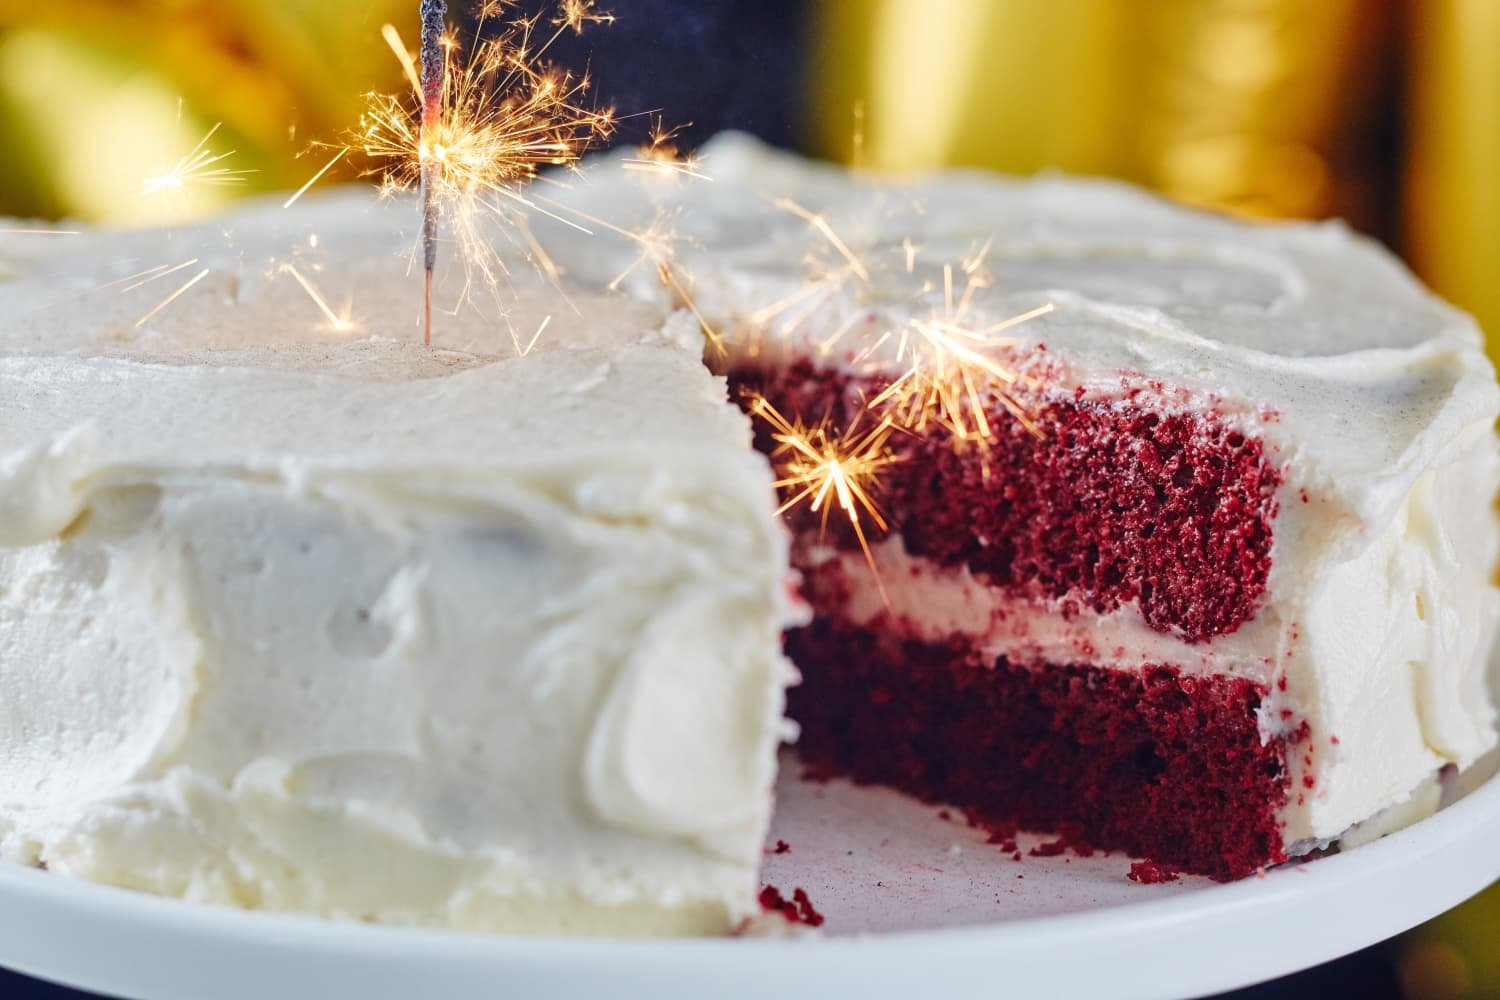 How To Make Classic Red Velvet Cake